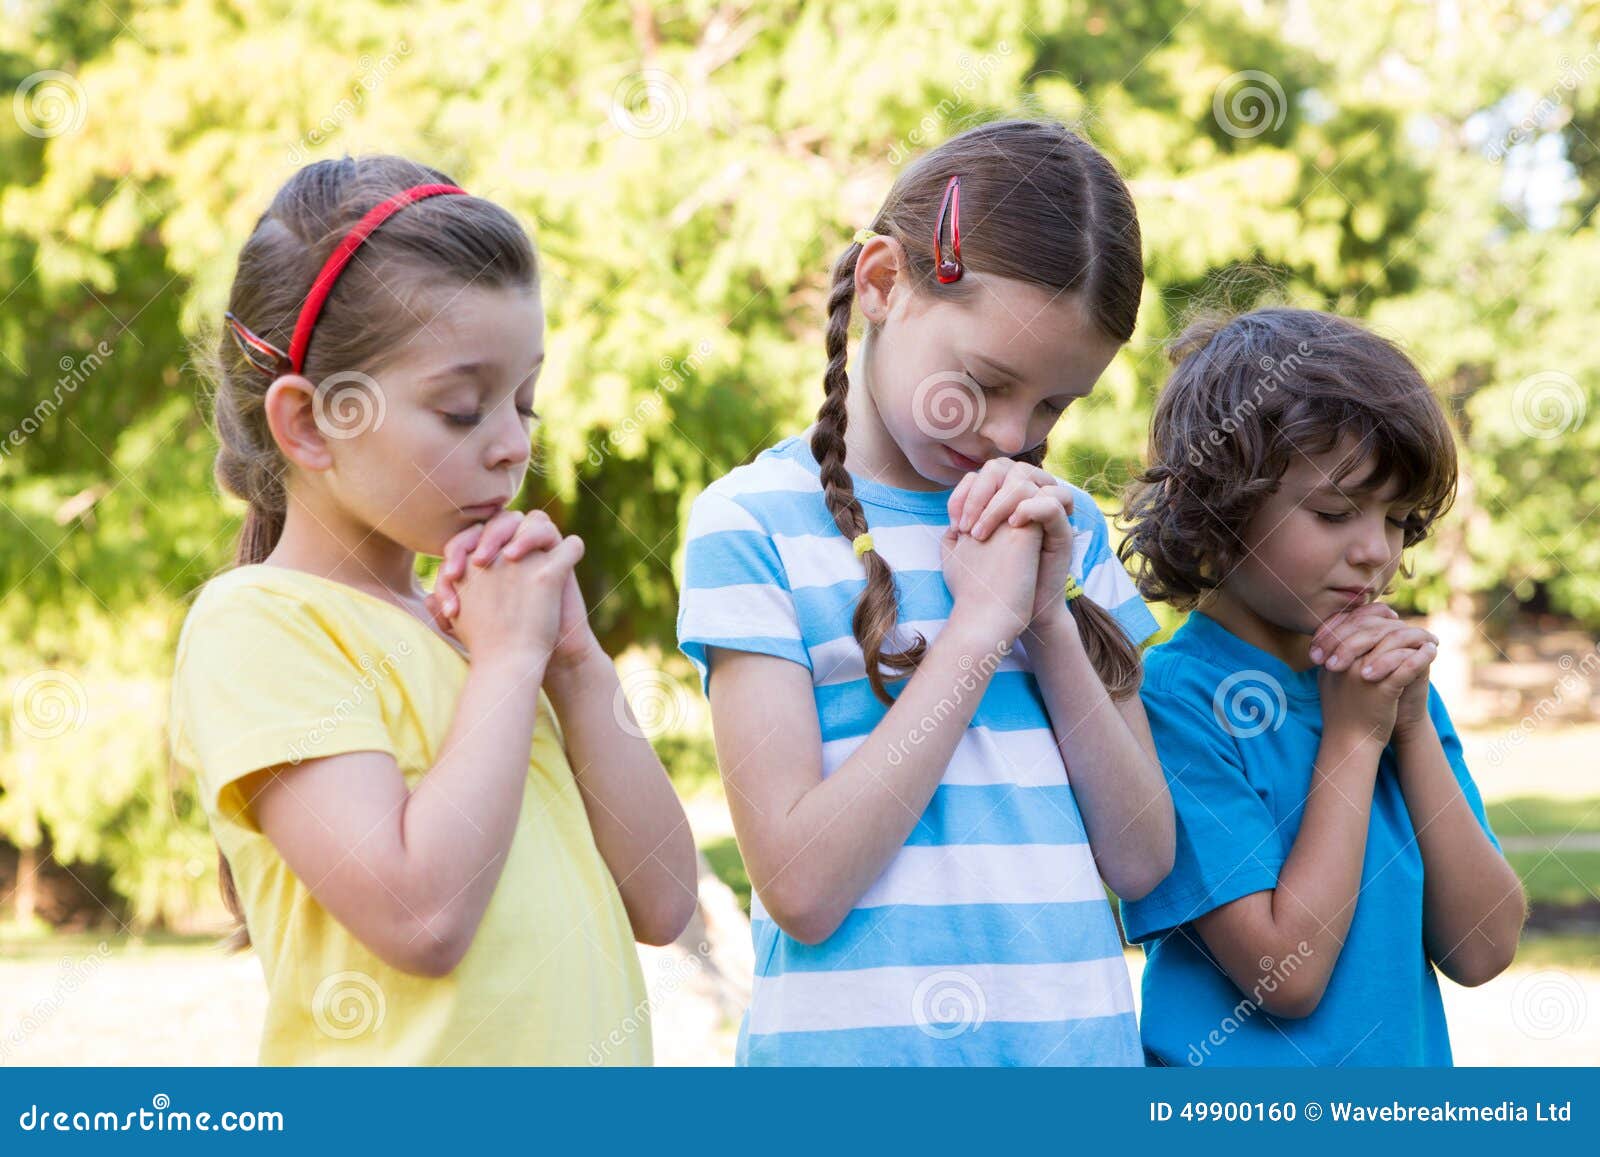 小女孩,祈祷,希望,宗教,崇拜,可爱,儿童,孩子,打坐,5K图片-千叶网